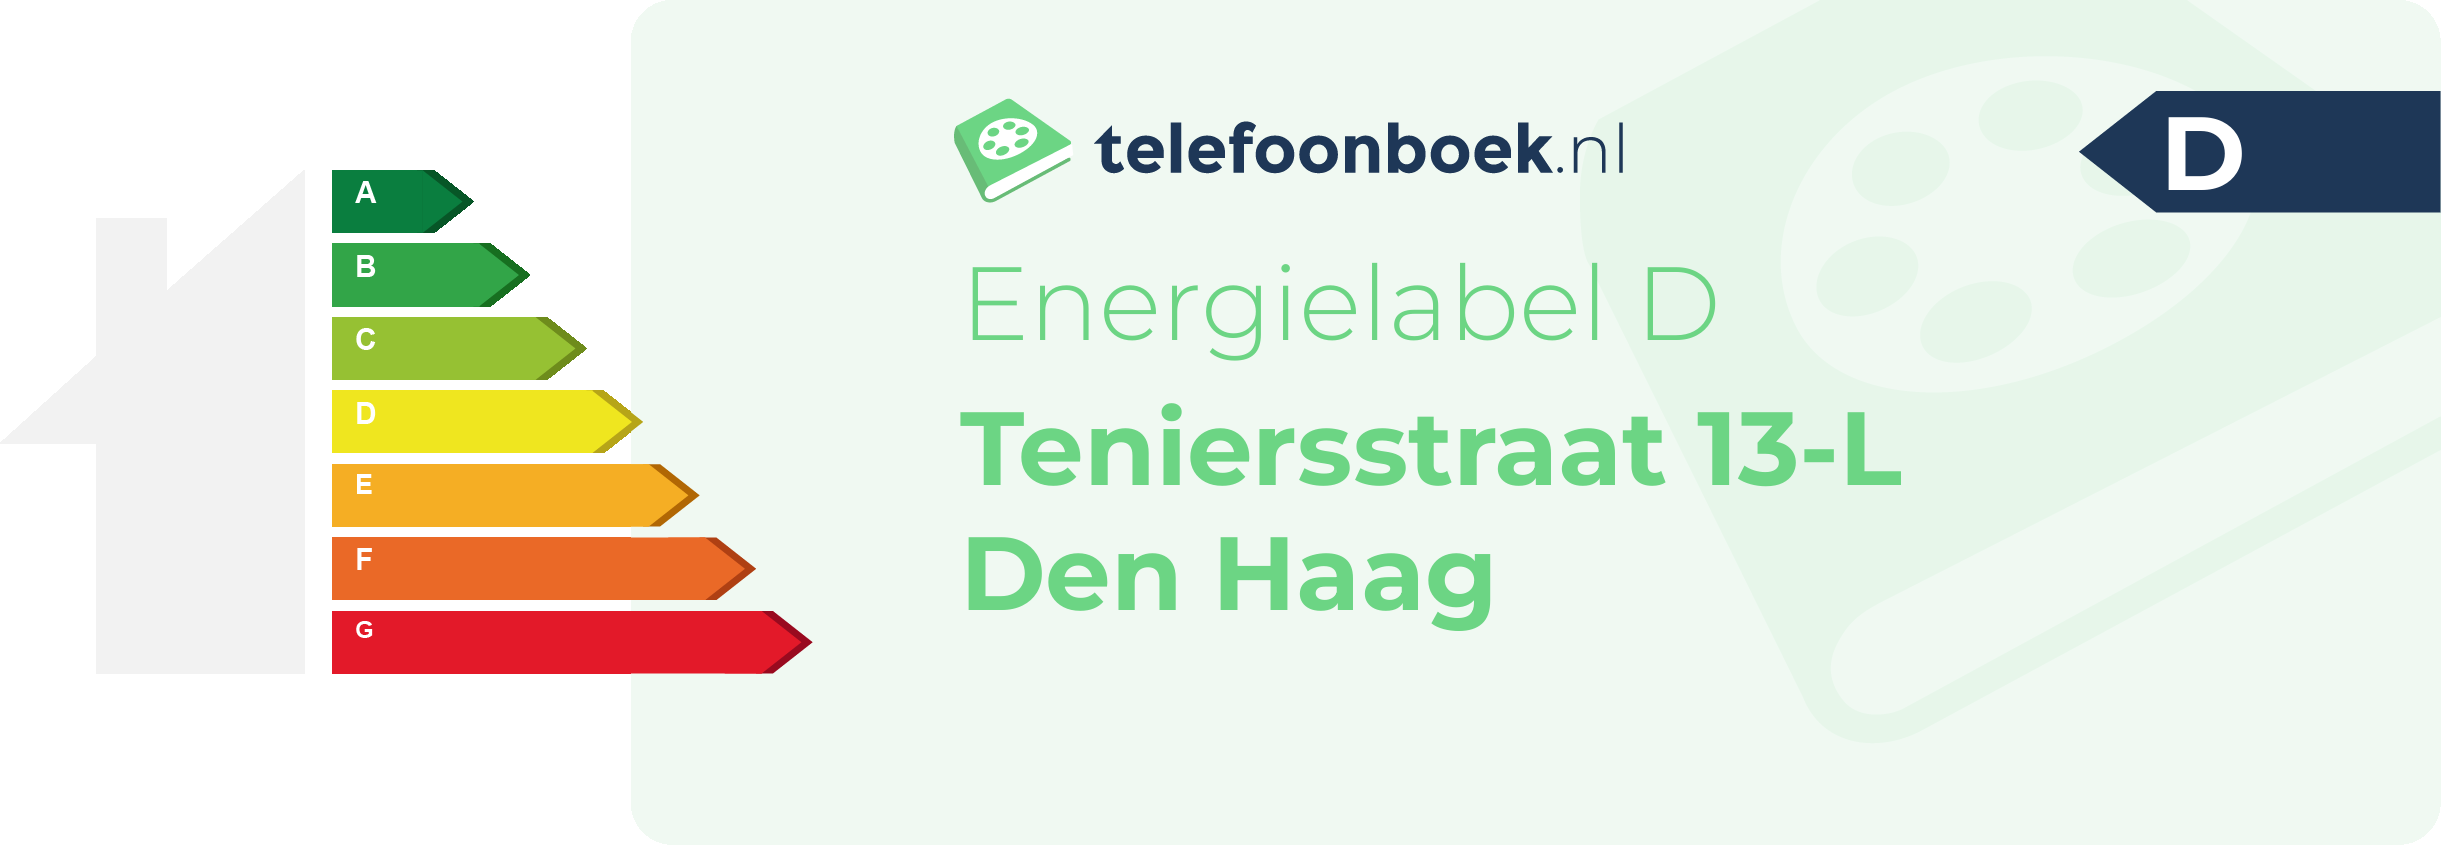 Energielabel Teniersstraat 13-L Den Haag